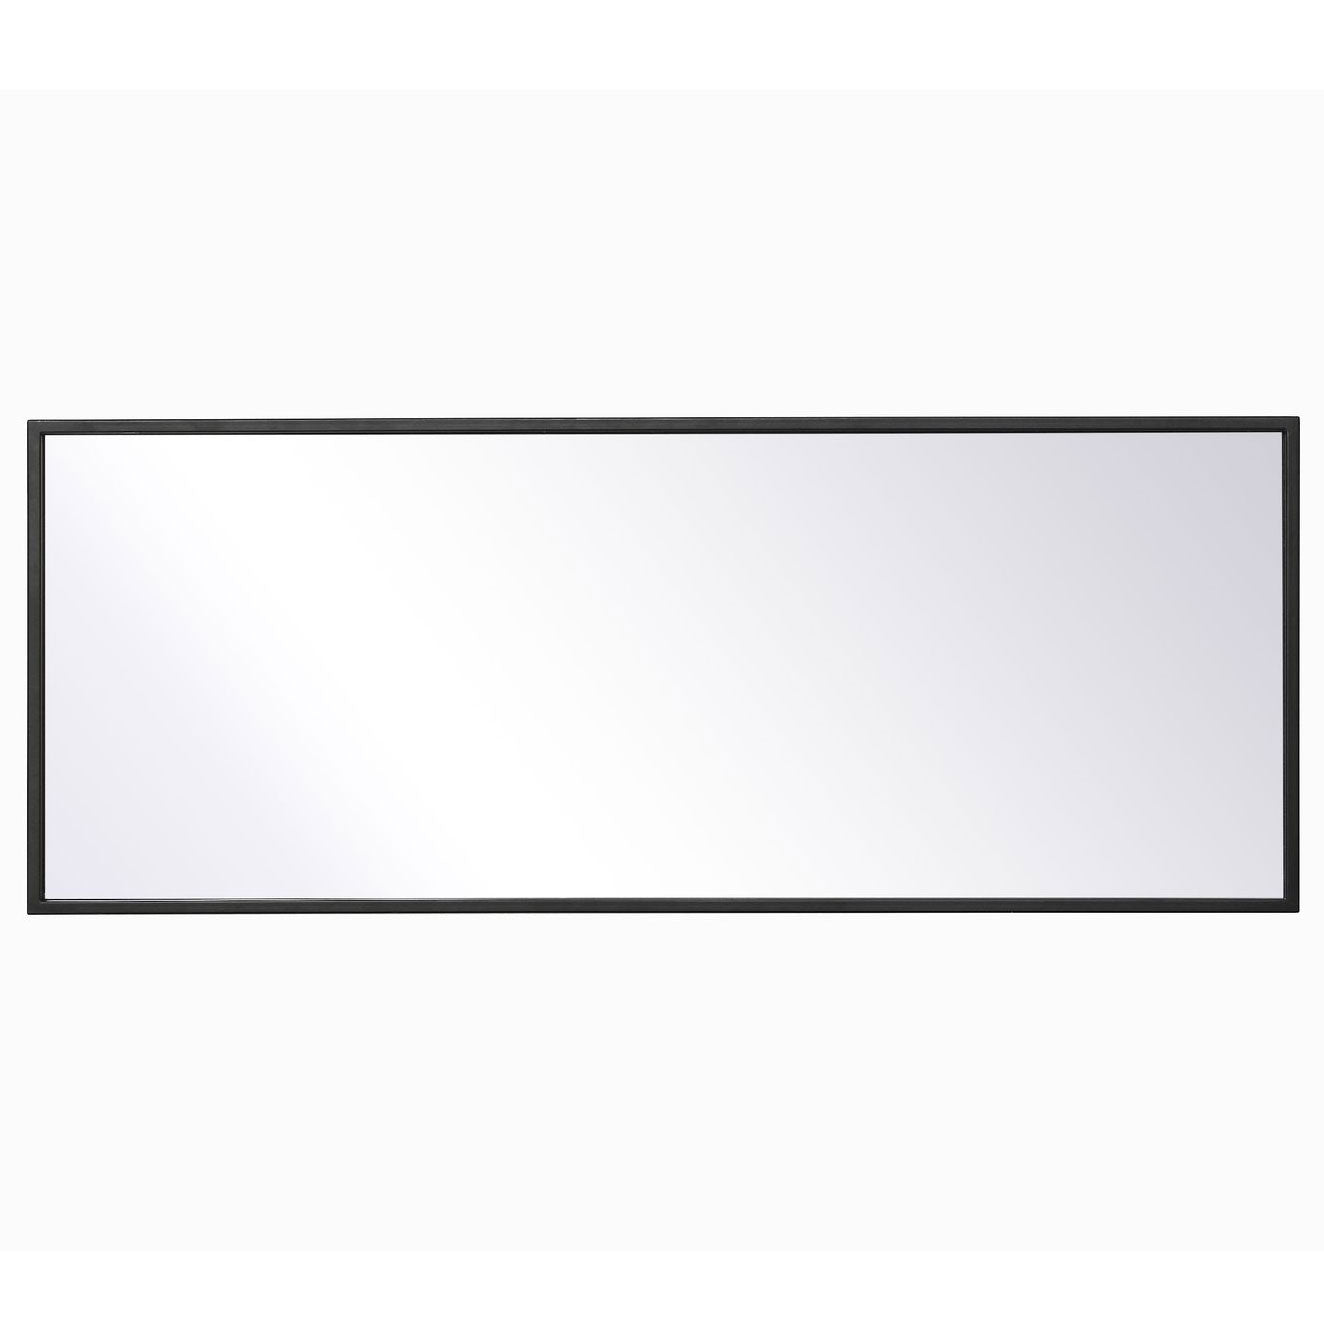 MR41436BK Monet 14" x 36" Metal Framed Rectangular Mirror in Black